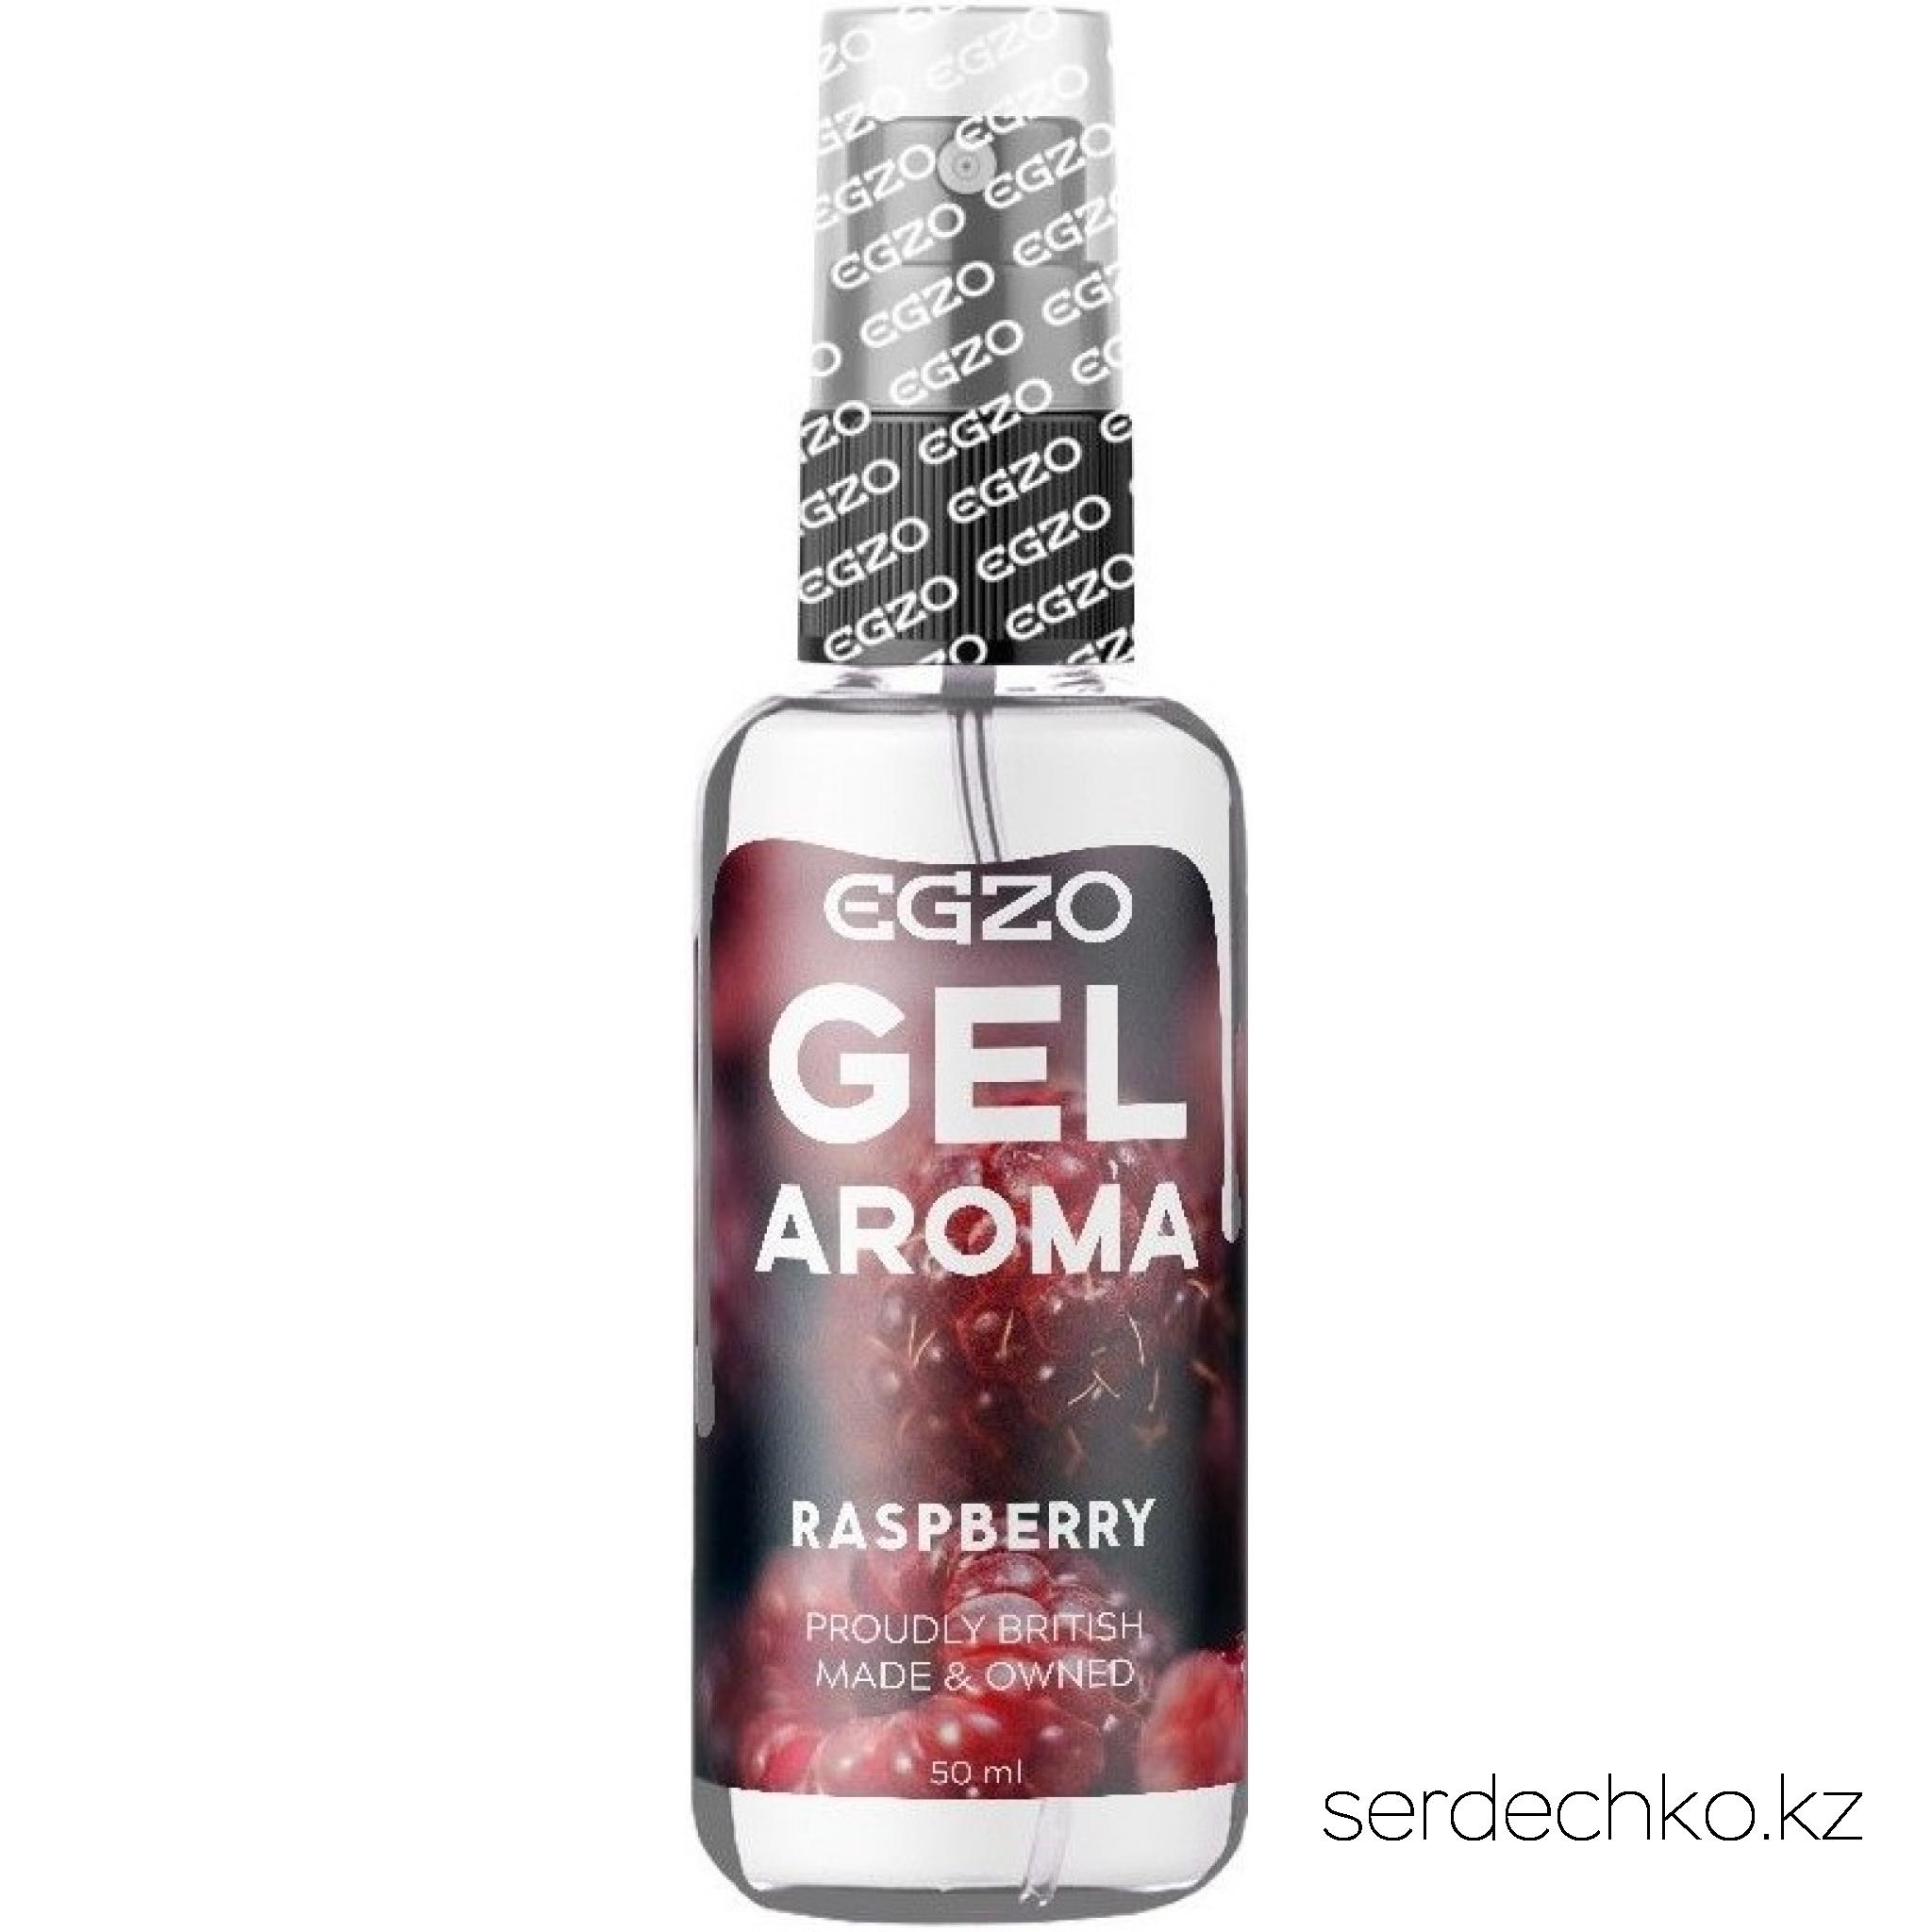 Гель увлажняющий на водной основе EGZO AROMA Raspberry 50 мл, 
	EGZO AROMA Raspberry
	
	Лубрикант EGZO AROMA - гель на водной основе со вкусом малины 50 мл.
	Оральный гель-смазка EGZO AROMA предназначен для повышения качества интимной жизни, обладает ярко выраженным вкусом и запахом малины, добавит в прелюдию вкус и свежих ощущений.
	Гель увлажняет кожные покровы, создает продолжительное шелковистое скольжение, идеален для деликатного обращения с нежными поверхностями слизистой.
	Изготовлен на водной основе, легко смывается водой и не скатывается в процессе использования. Не оставляет следов на одежде. Удобный дозатор способствует быстрому, легкому нанесению.
	Можно совмещать со всеми видами латексных изделий. Подходит для использования в качестве классического лубриканта.
	Вкус малины придаст приятную пикантную нотку оральным ласкам.
	Добавьте в Вашу прелюдию вкуса и новых ощущений.
	Не липнет к телу.
	Не пачкает одежду и постельное белье.
	Легко смывается с тела водой.
